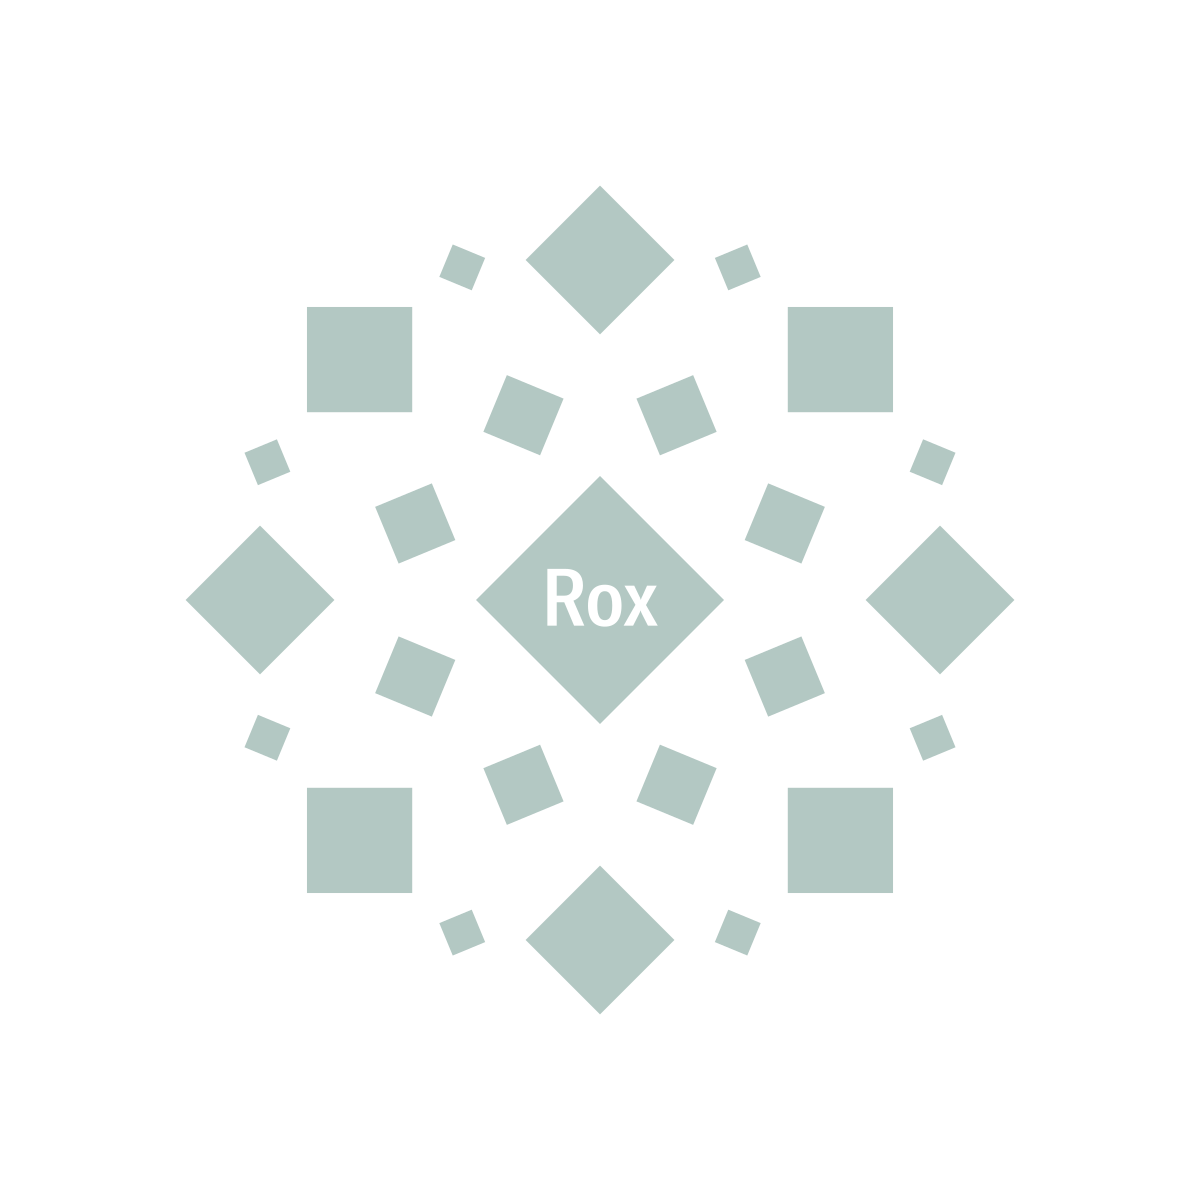 Rox aka Roxx Weed Strain Information | Leafly